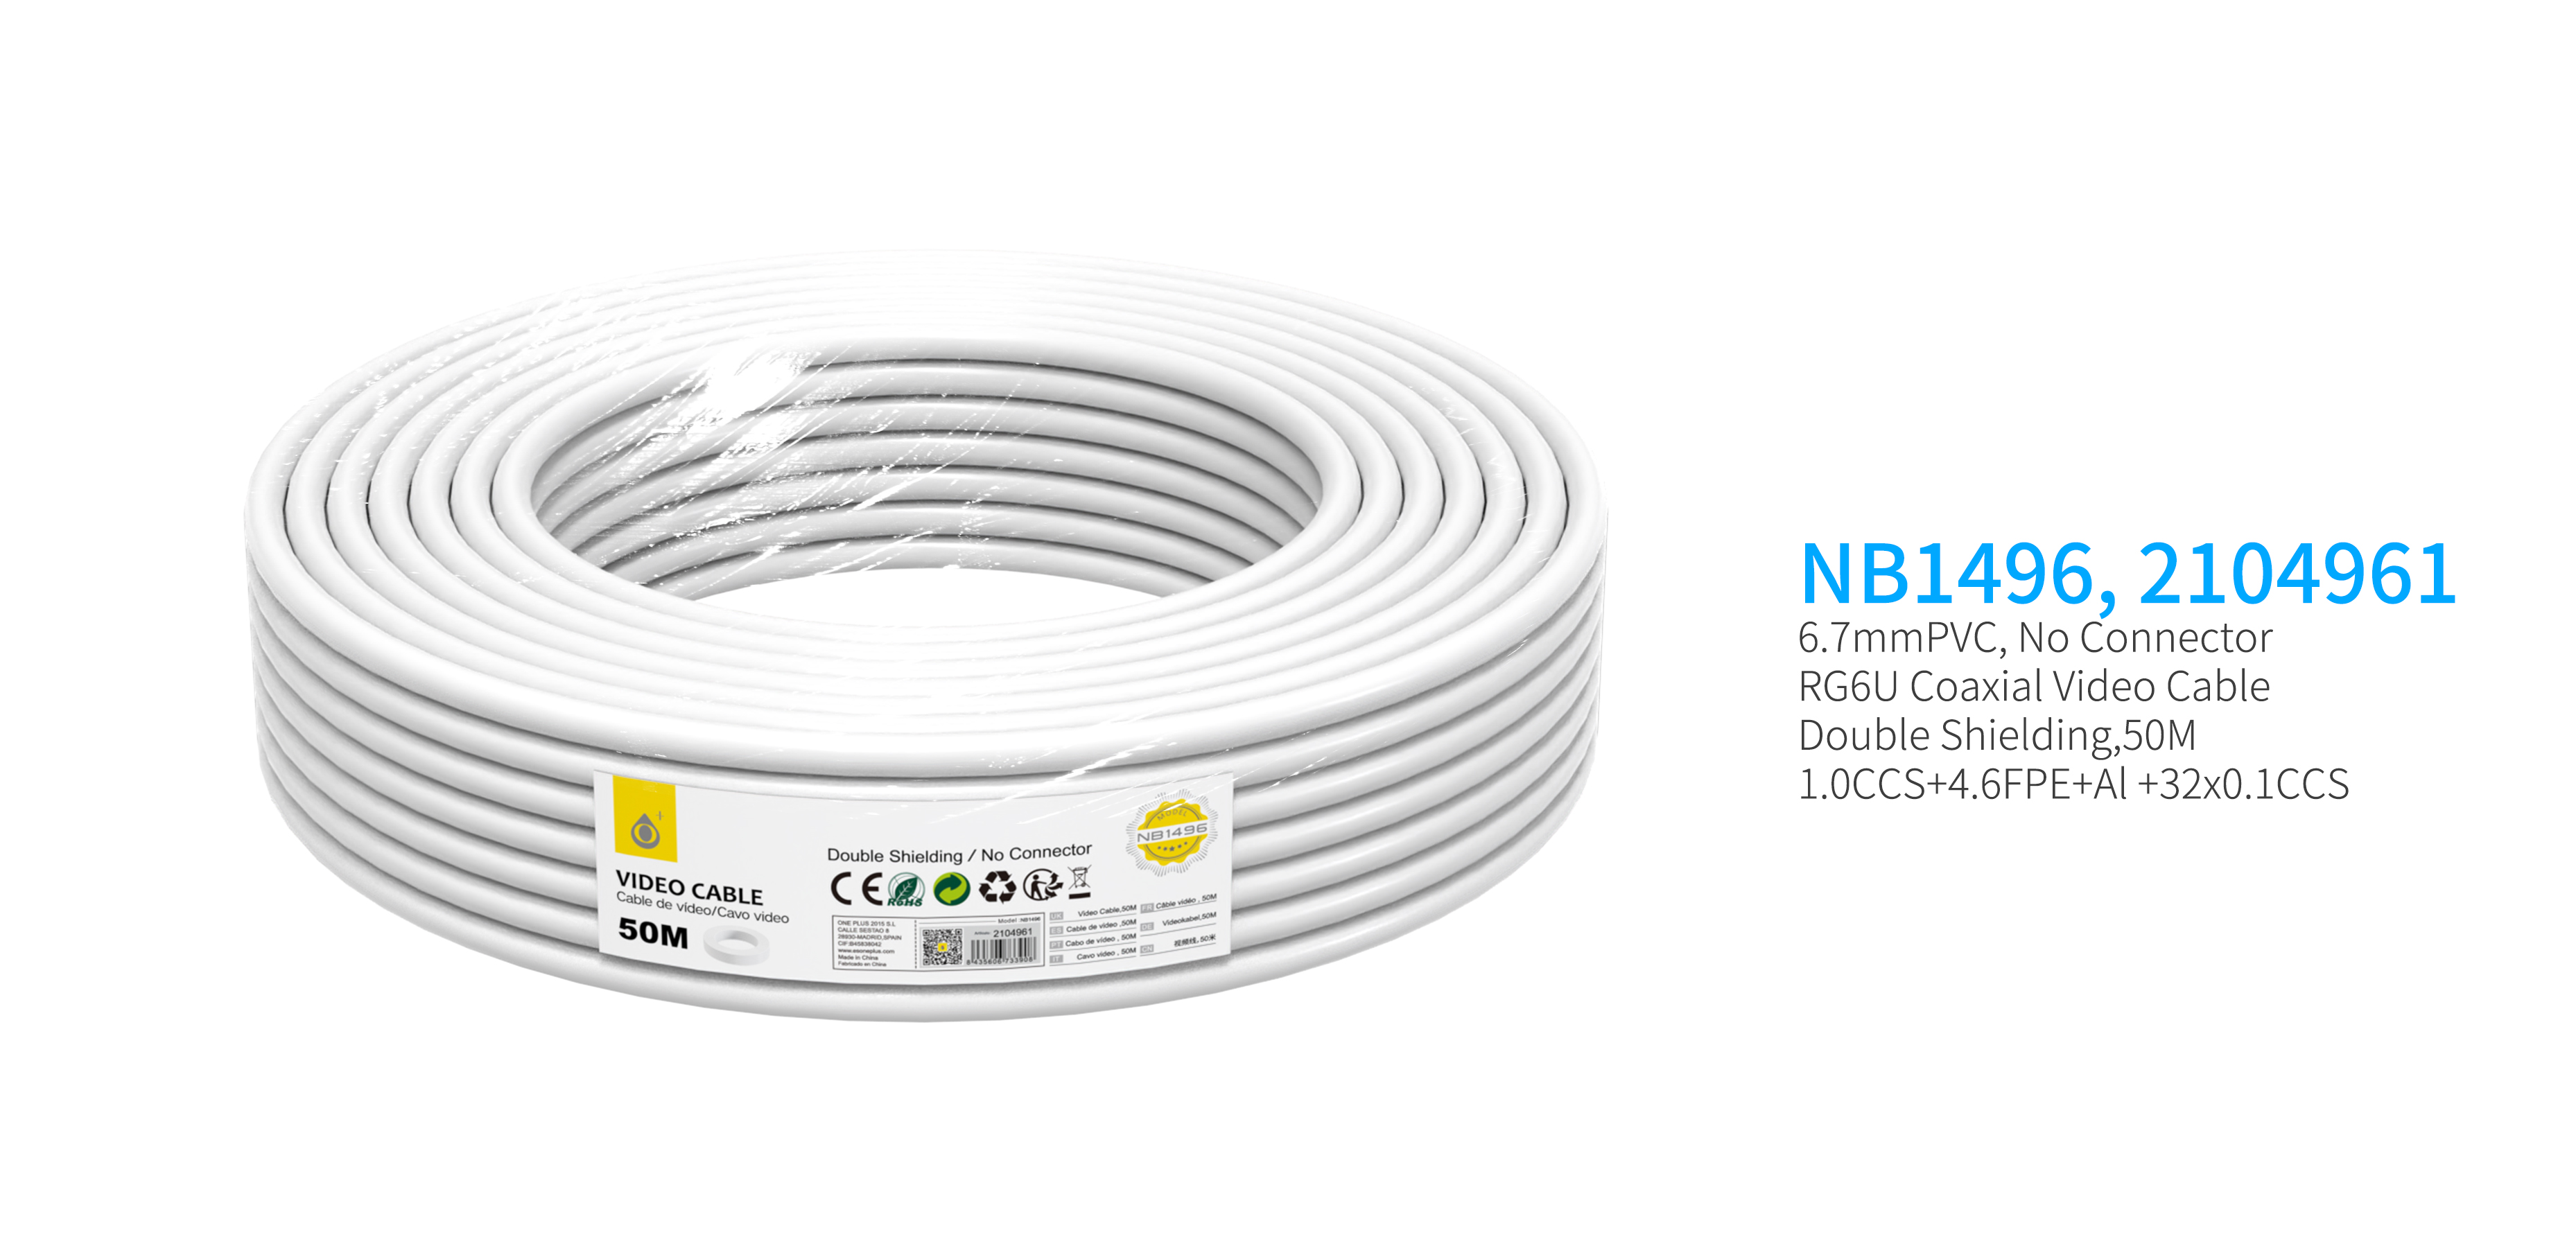 NB1496  Cable de Video(Coaxial RG6U) Sin Conector, doble blindaje, 50 Metro, Blanco